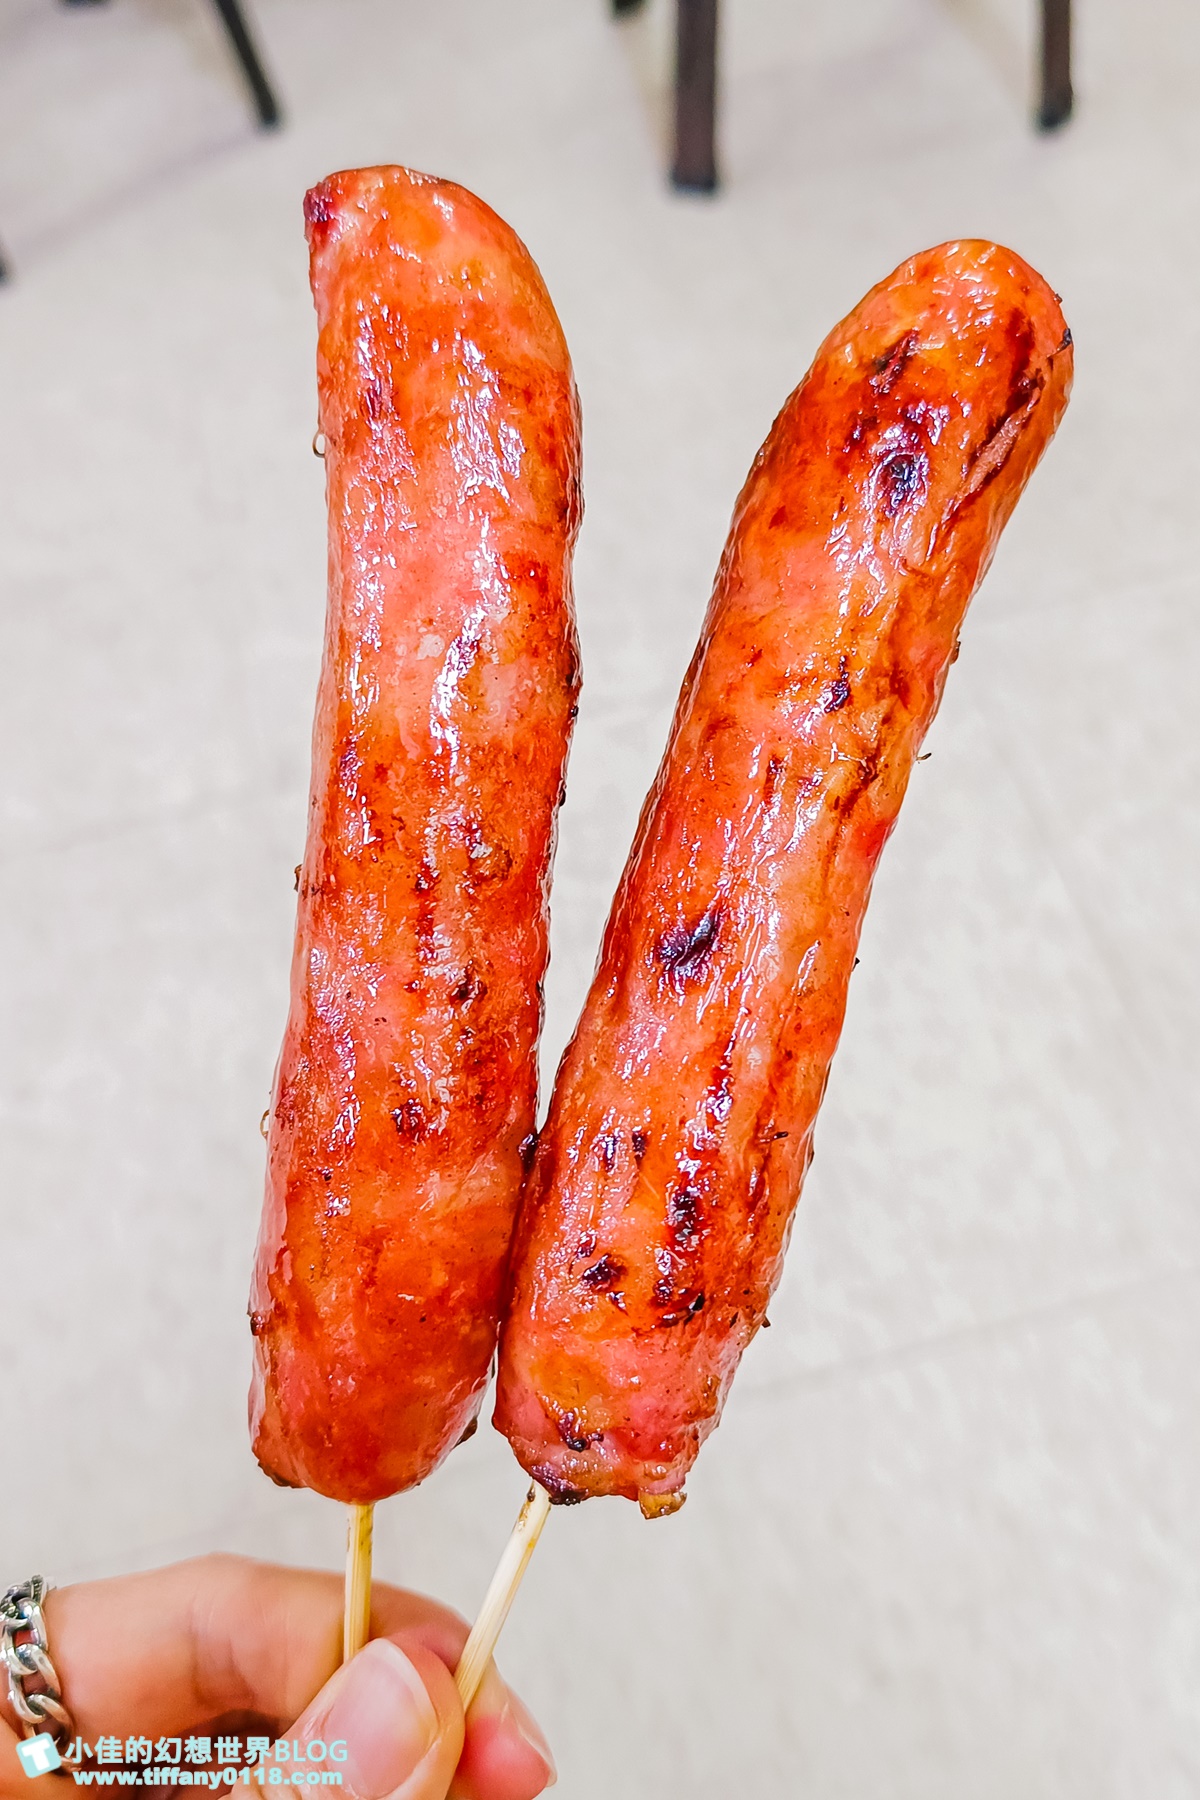 [板橋美食]油庫口蚵仔麵線/麵線+炭烤香腸一組才是經典吃法/板橋美食推薦